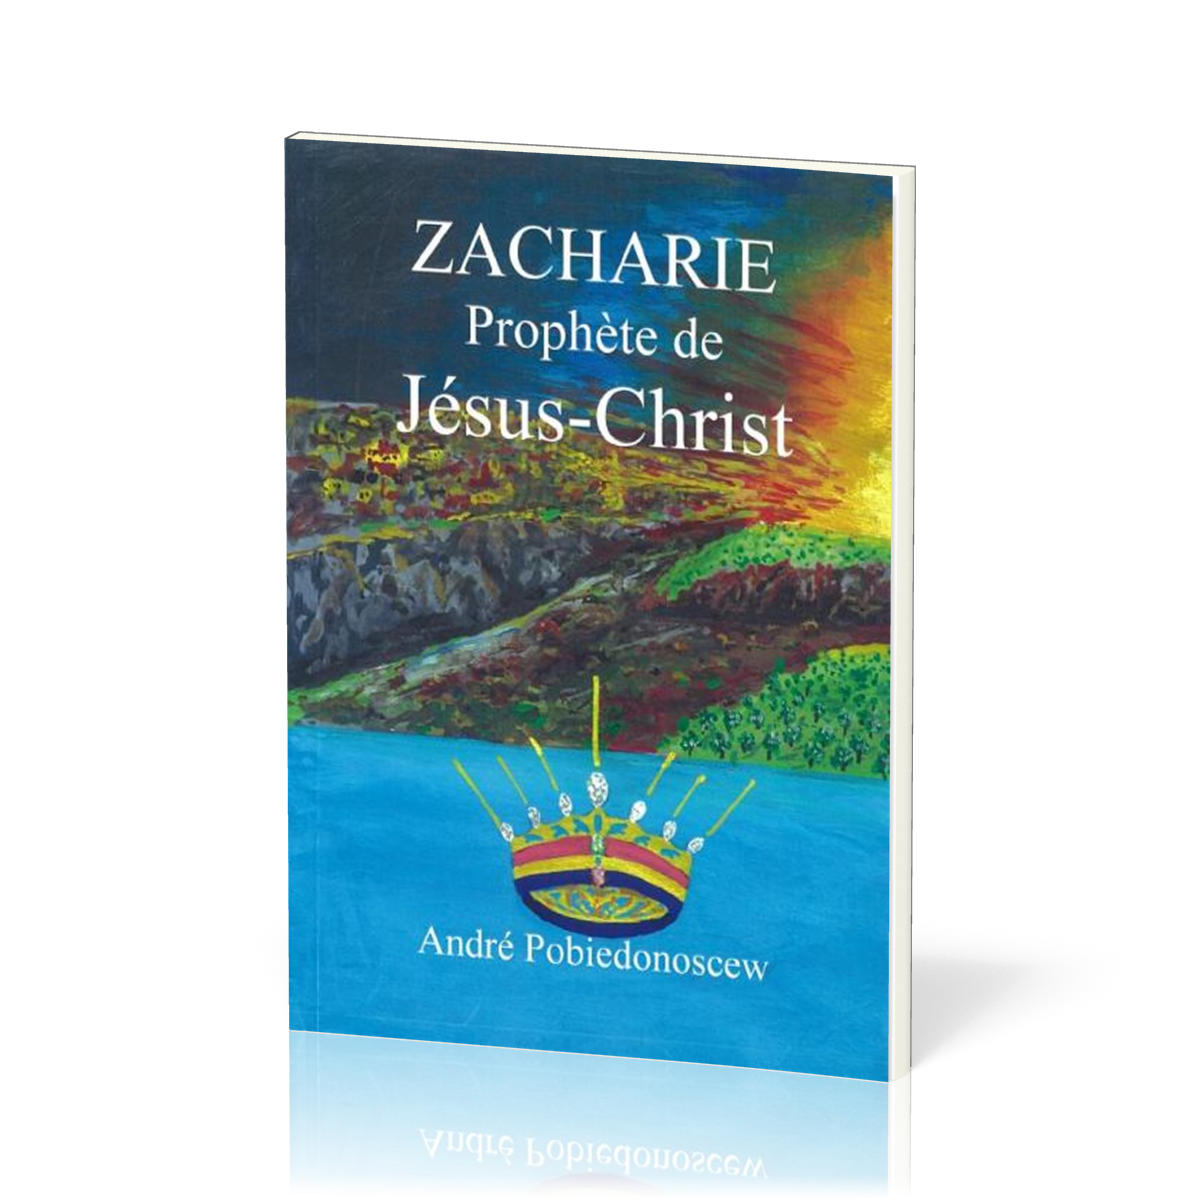 ZACHARIE PROPHETE DE JESUS-CHRIST